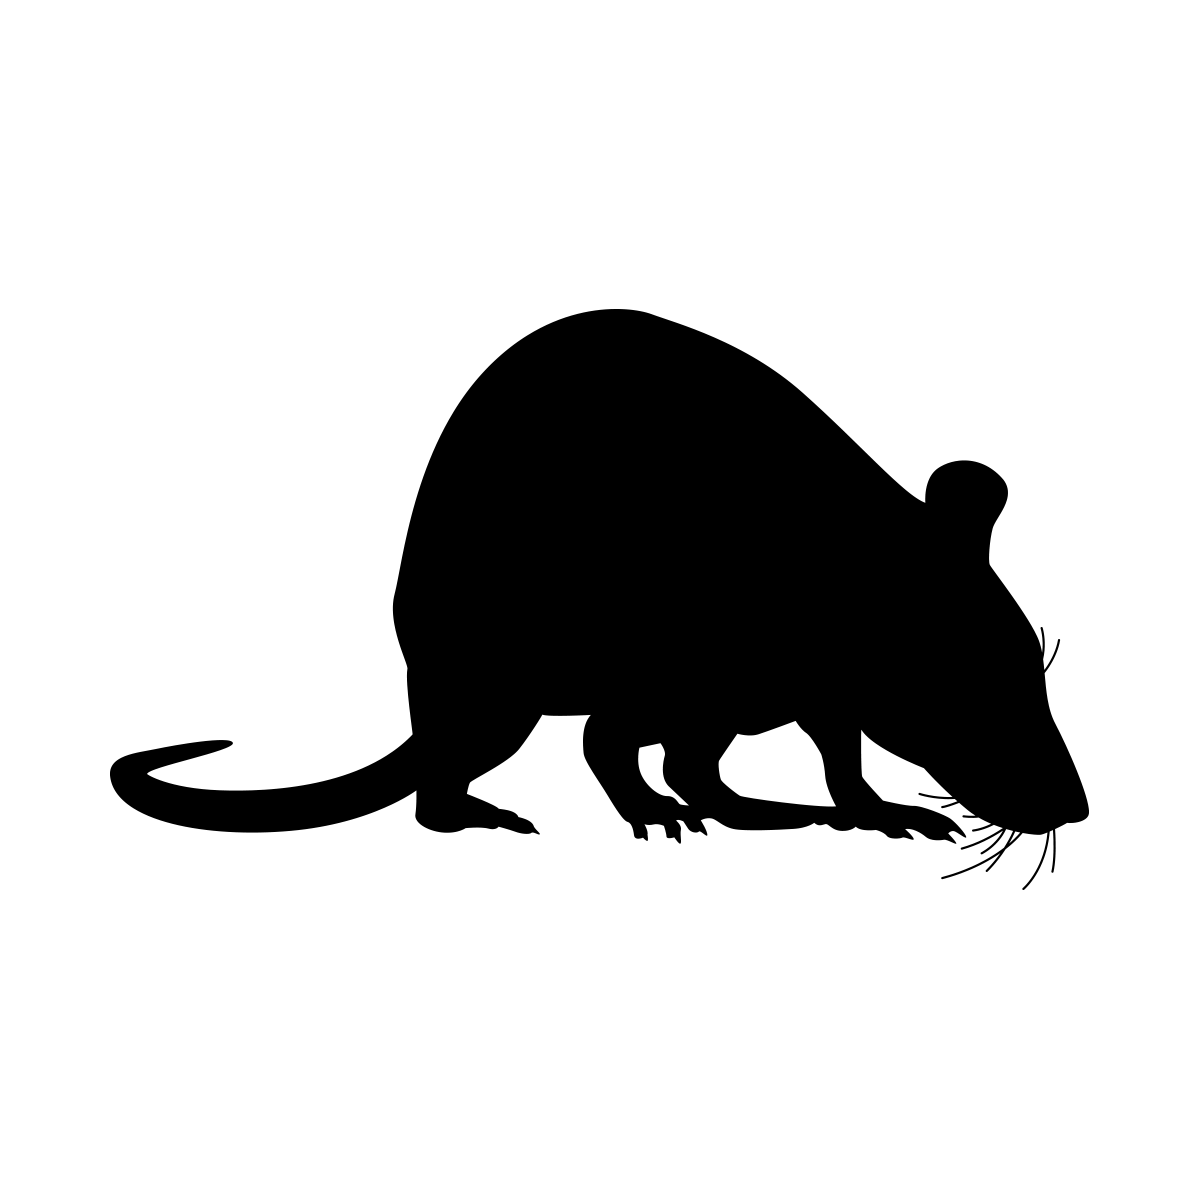 Black Rat Illustration for Pest Management